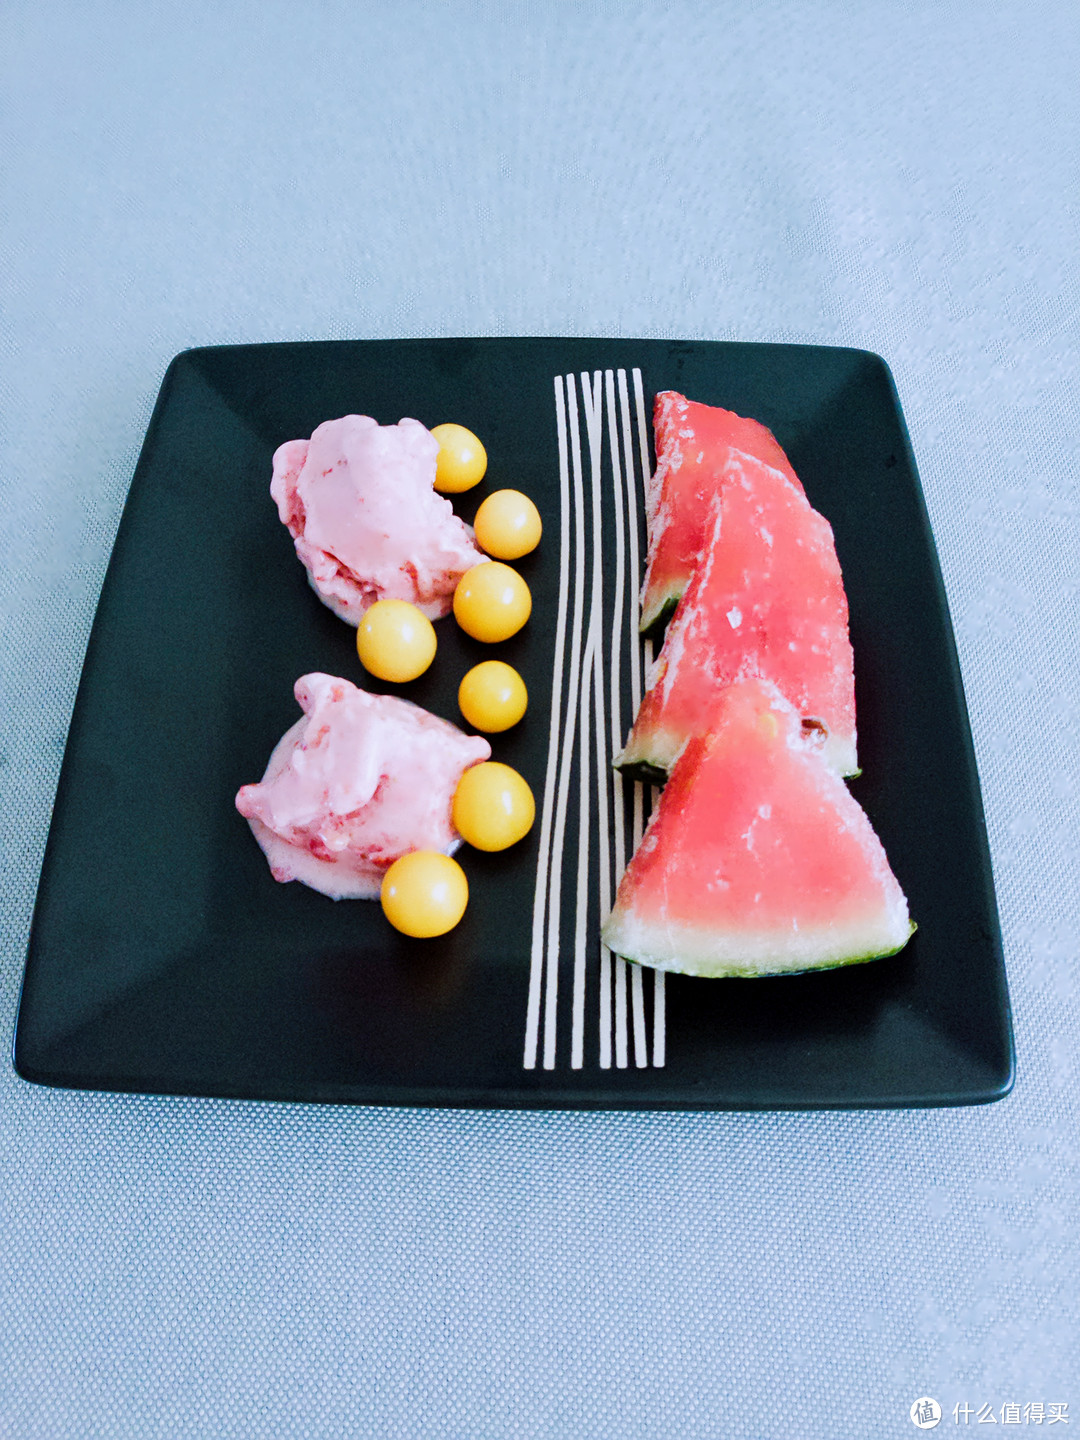 #一周热征#消暑美食#冰爽水果冻起来！让最简单的食材成为高大上的冰品~